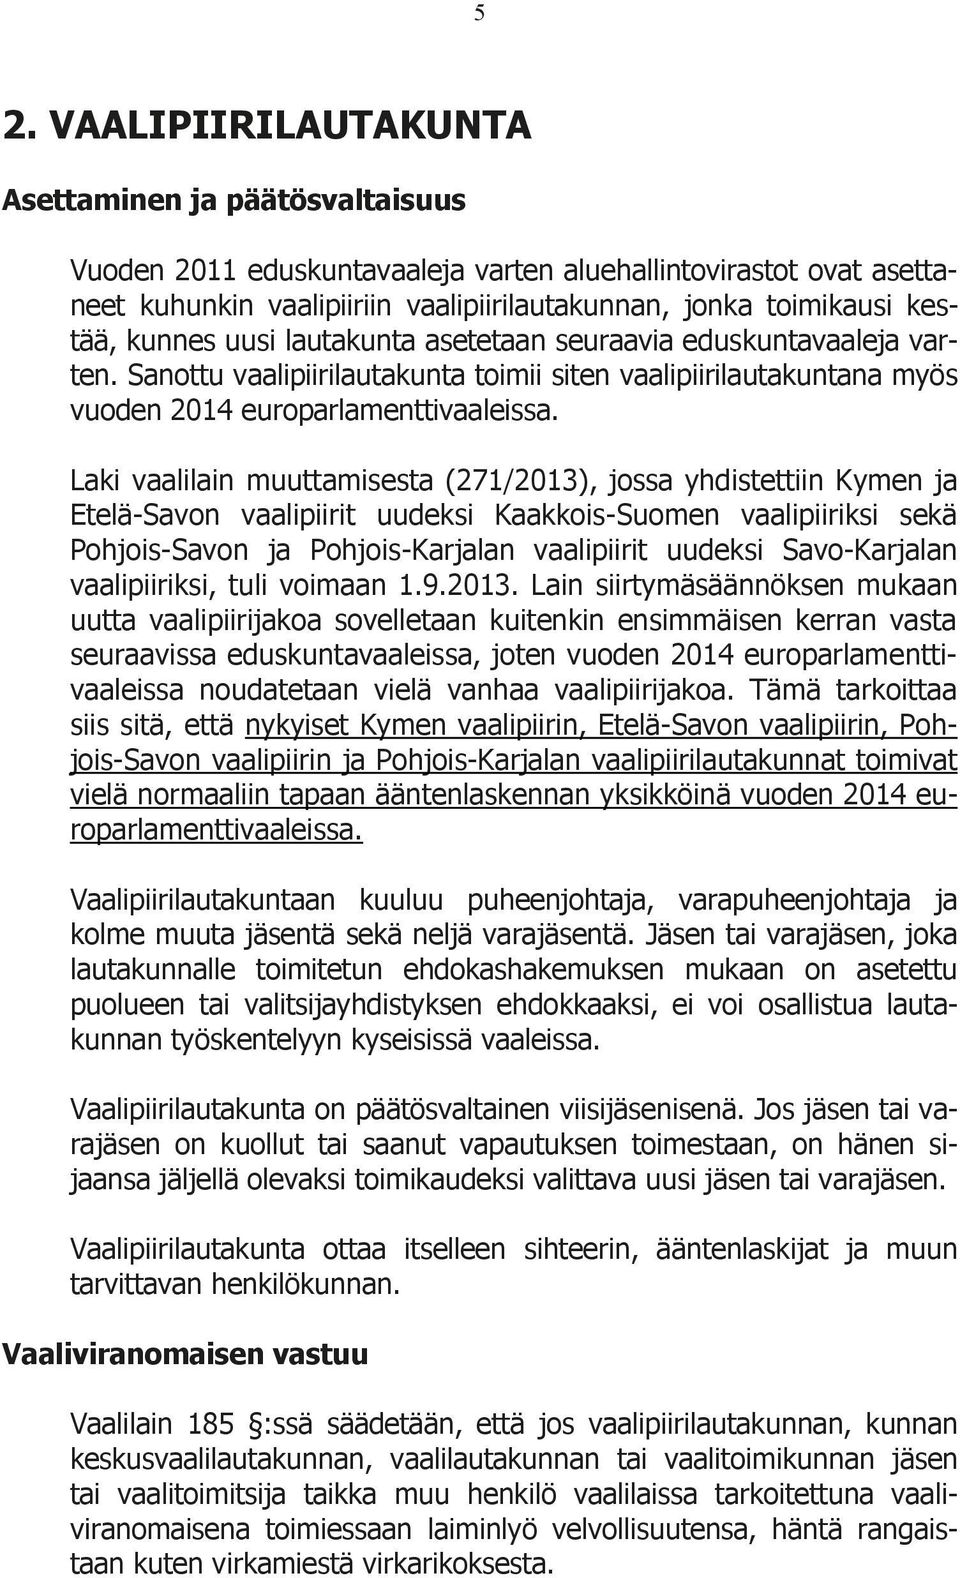 Laki vaalilain muuttamisesta (271/2013), jossa yhdistettiin Kymen ja Etelä-Savon vaalipiirit uudeksi Kaakkois-Suomen vaalipiiriksi sekä Pohjois-Savon ja Pohjois-Karjalan vaalipiirit uudeksi